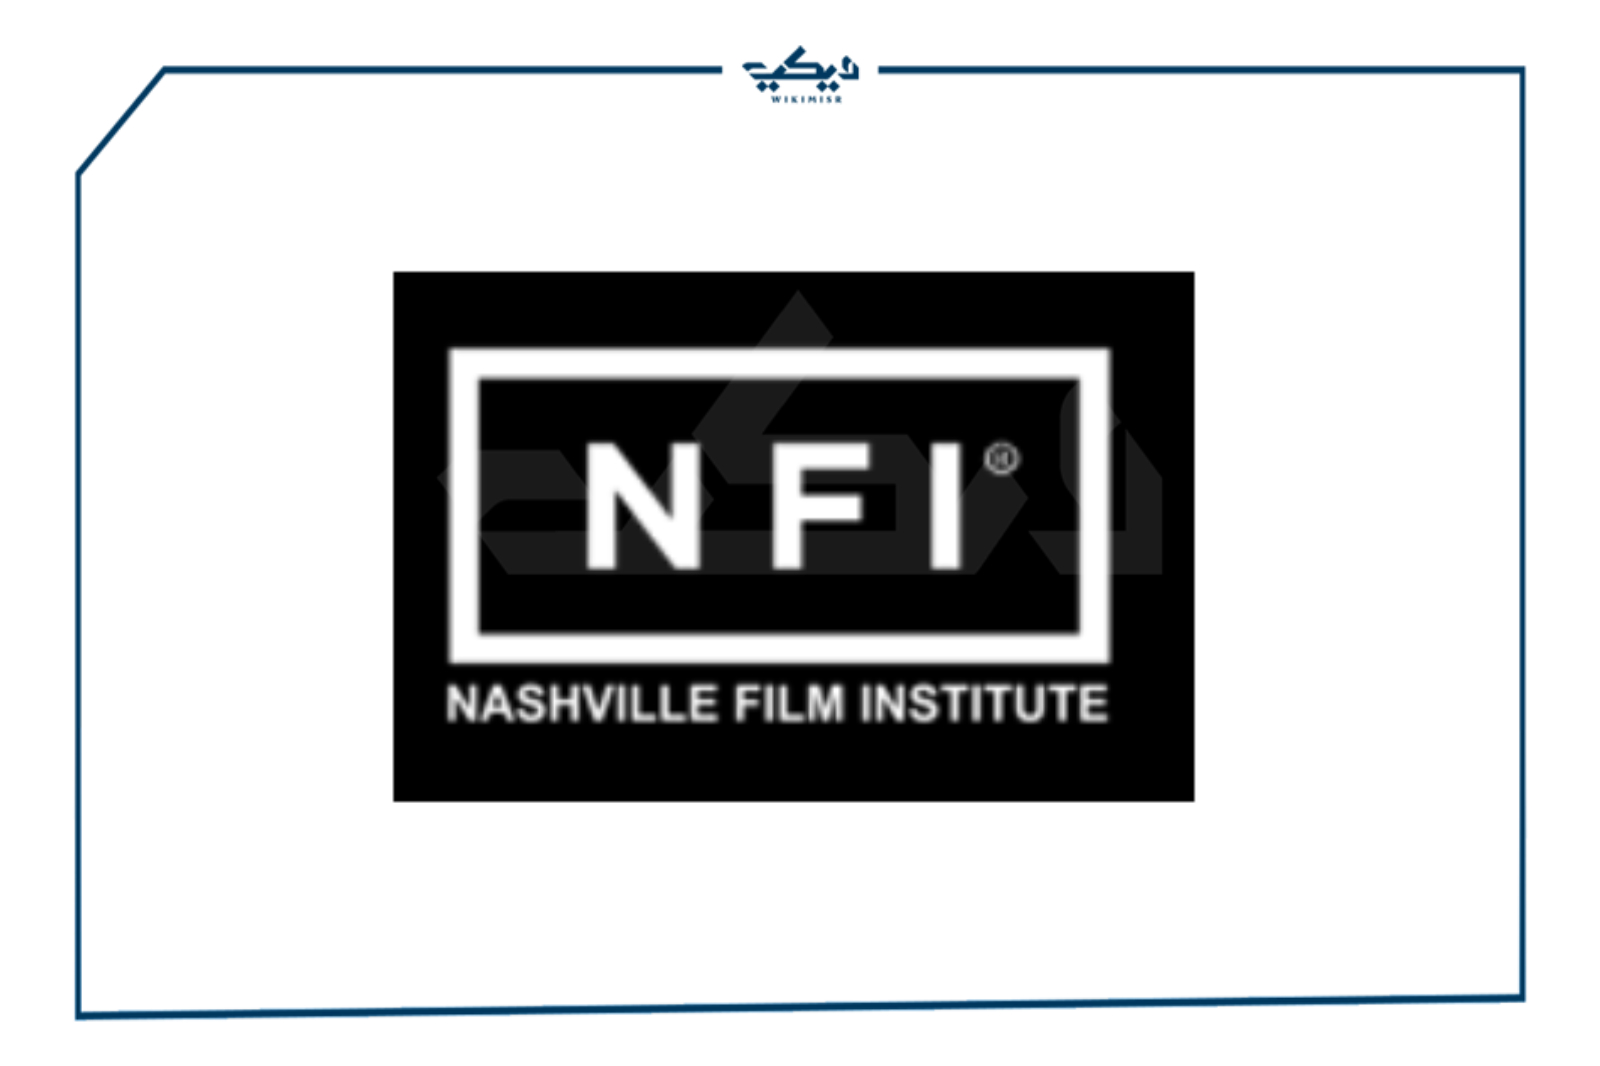 Nashville Film Institute